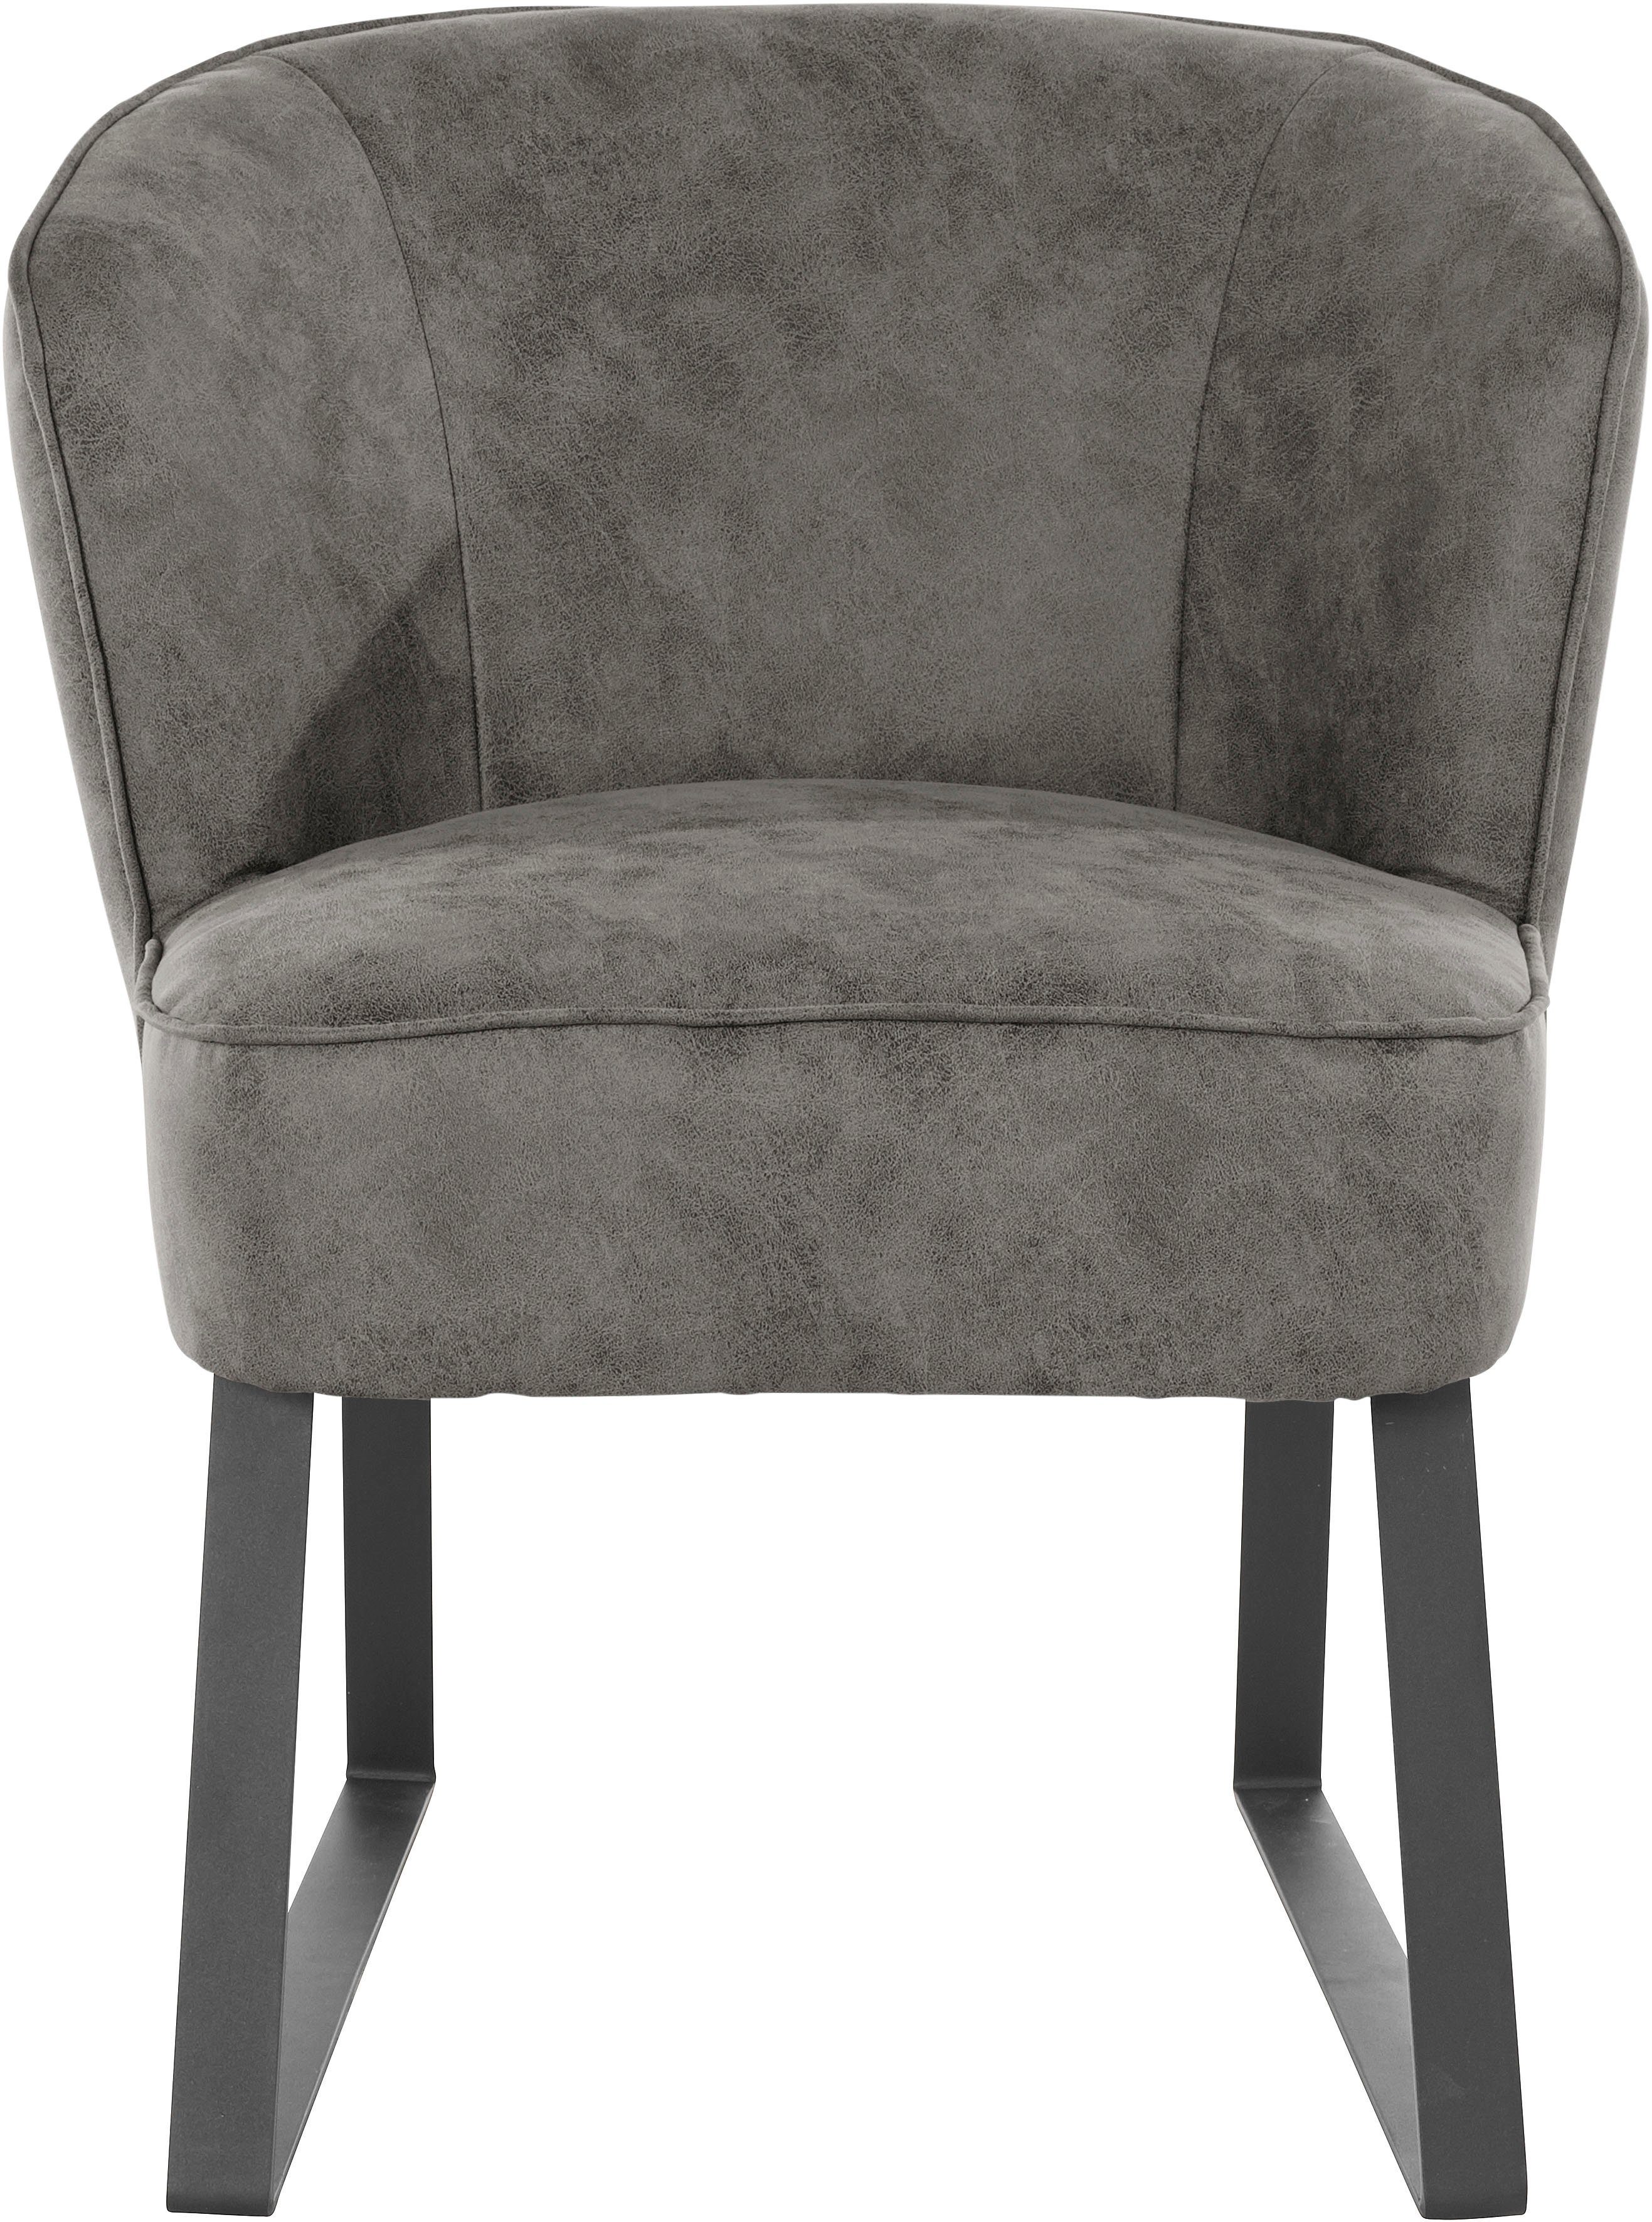 Stck. Qualitäten, in Sessel 1 mit exxpo Metallfüßen, - sofa Keder Bezug fashion und Americano, verschiedenen